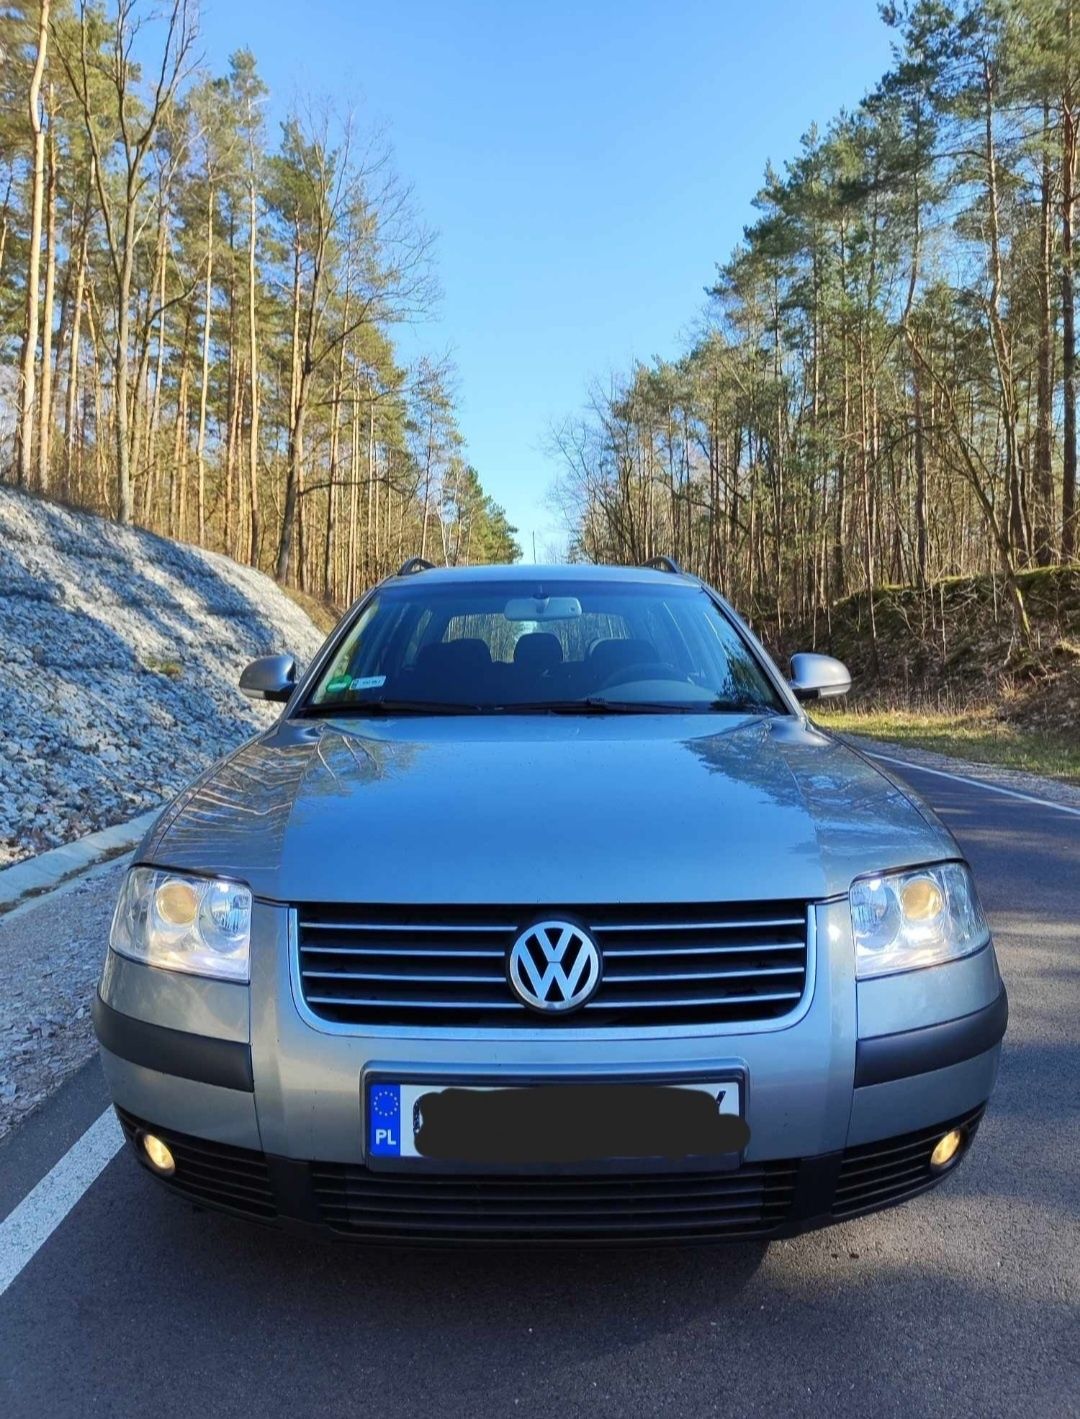 Volkswagen Passat * 1.9 TDI 130 km * śliczny * hak * kombi